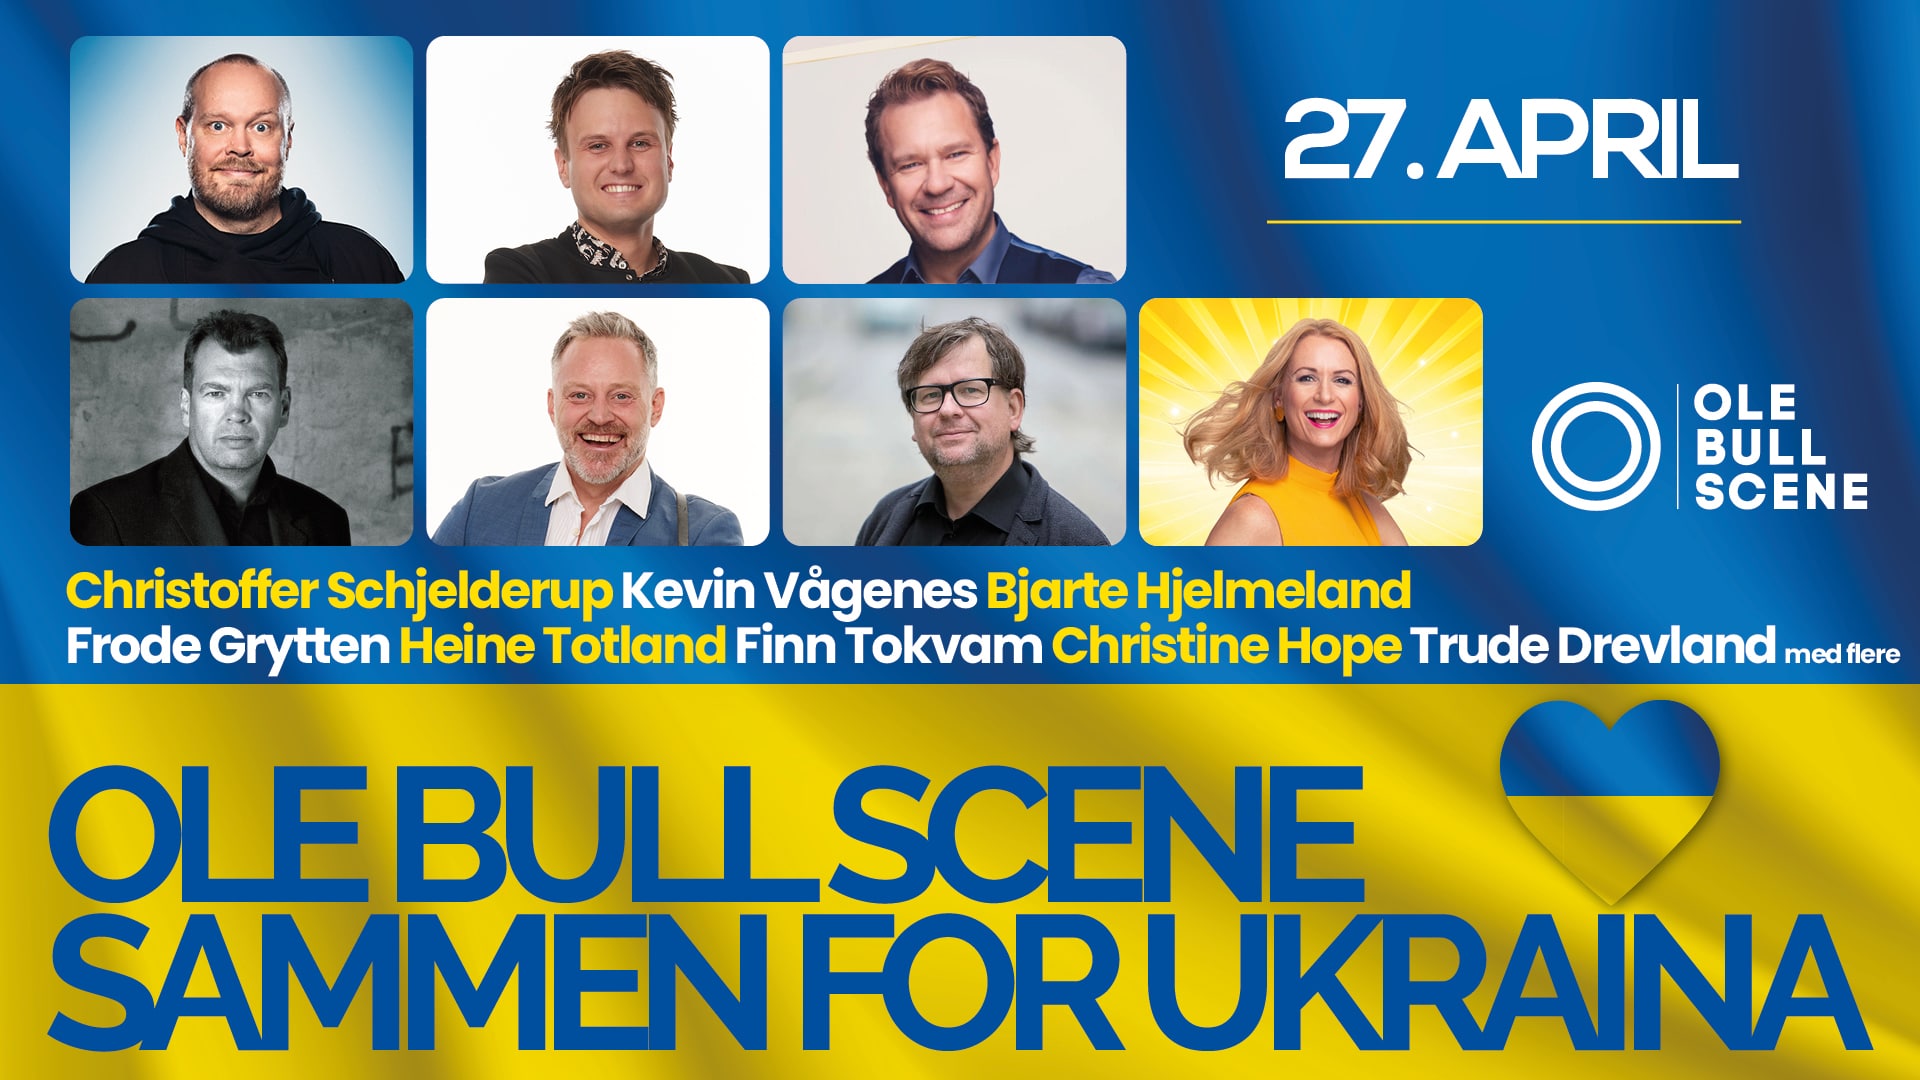 Ole Bull Scene går Sammen for Ukraina